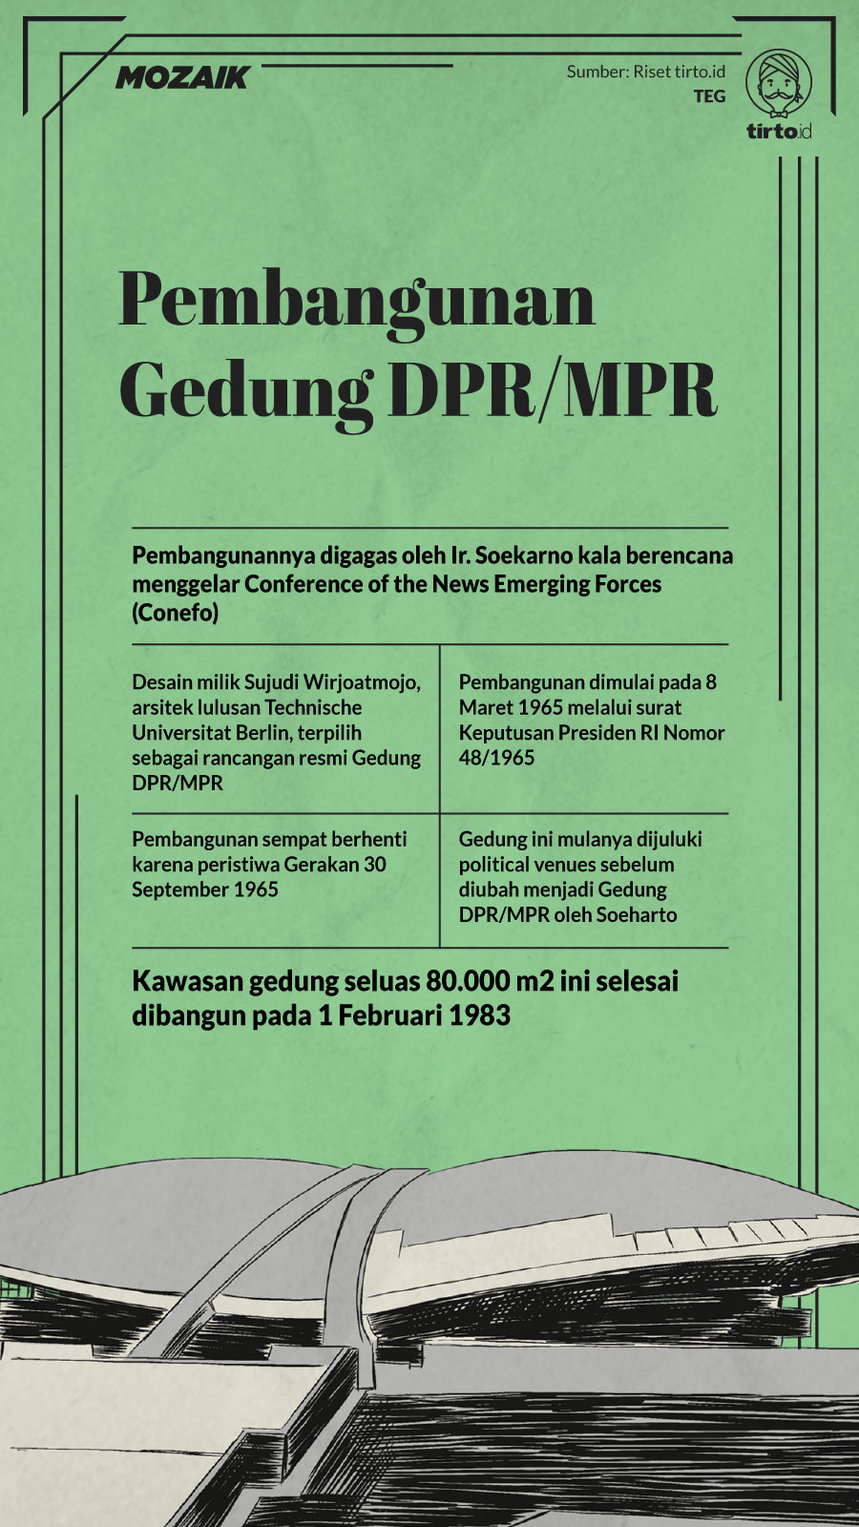 Infografik Mozaik pembangunan gedung DPR/MPR